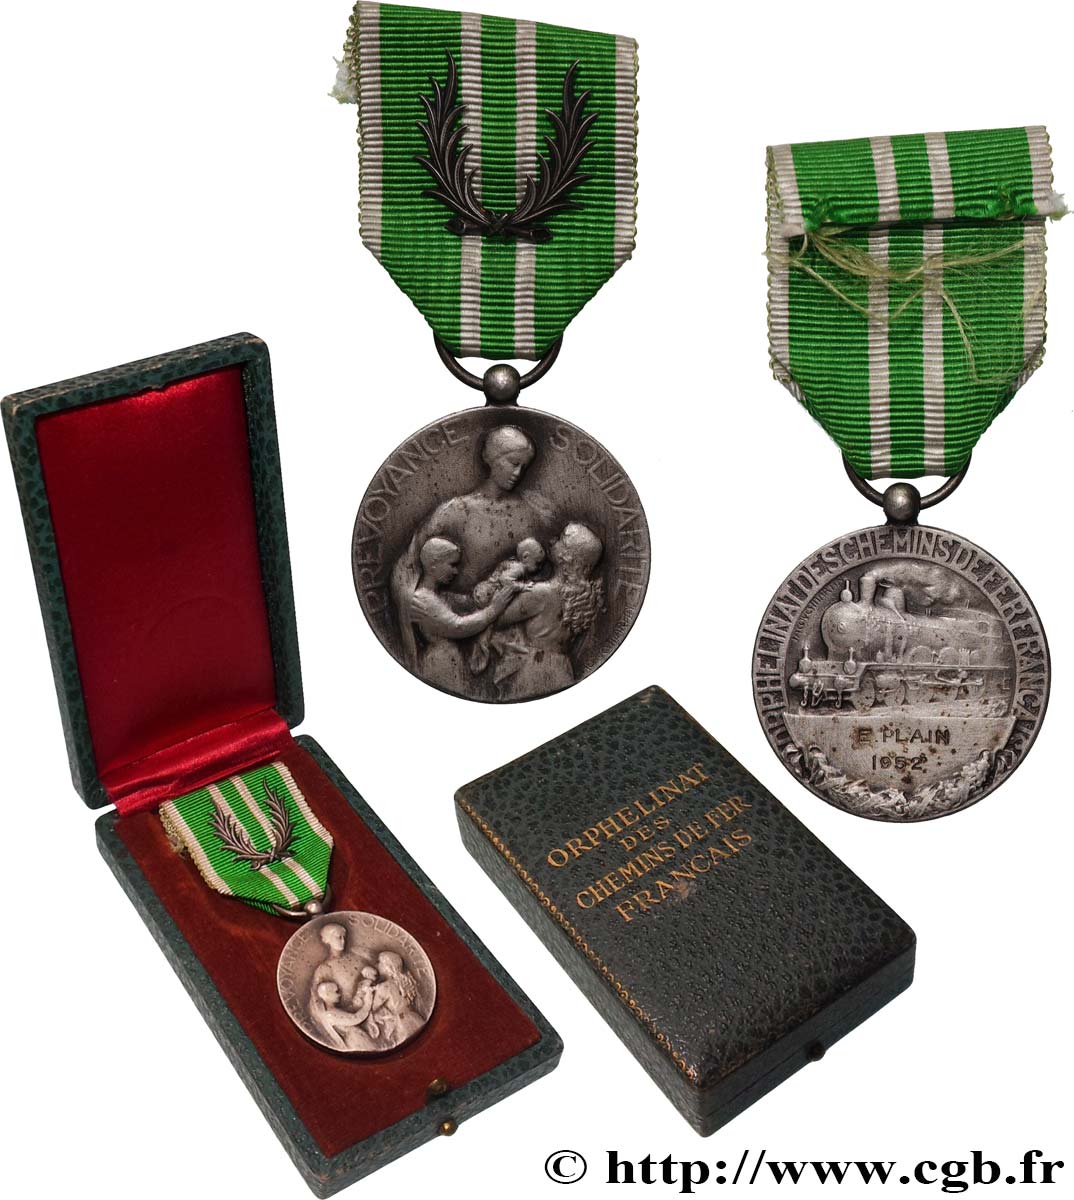 TRANSPORTS AND RAILWAYS Médaille de l’orphelinat des chemins de fer AU